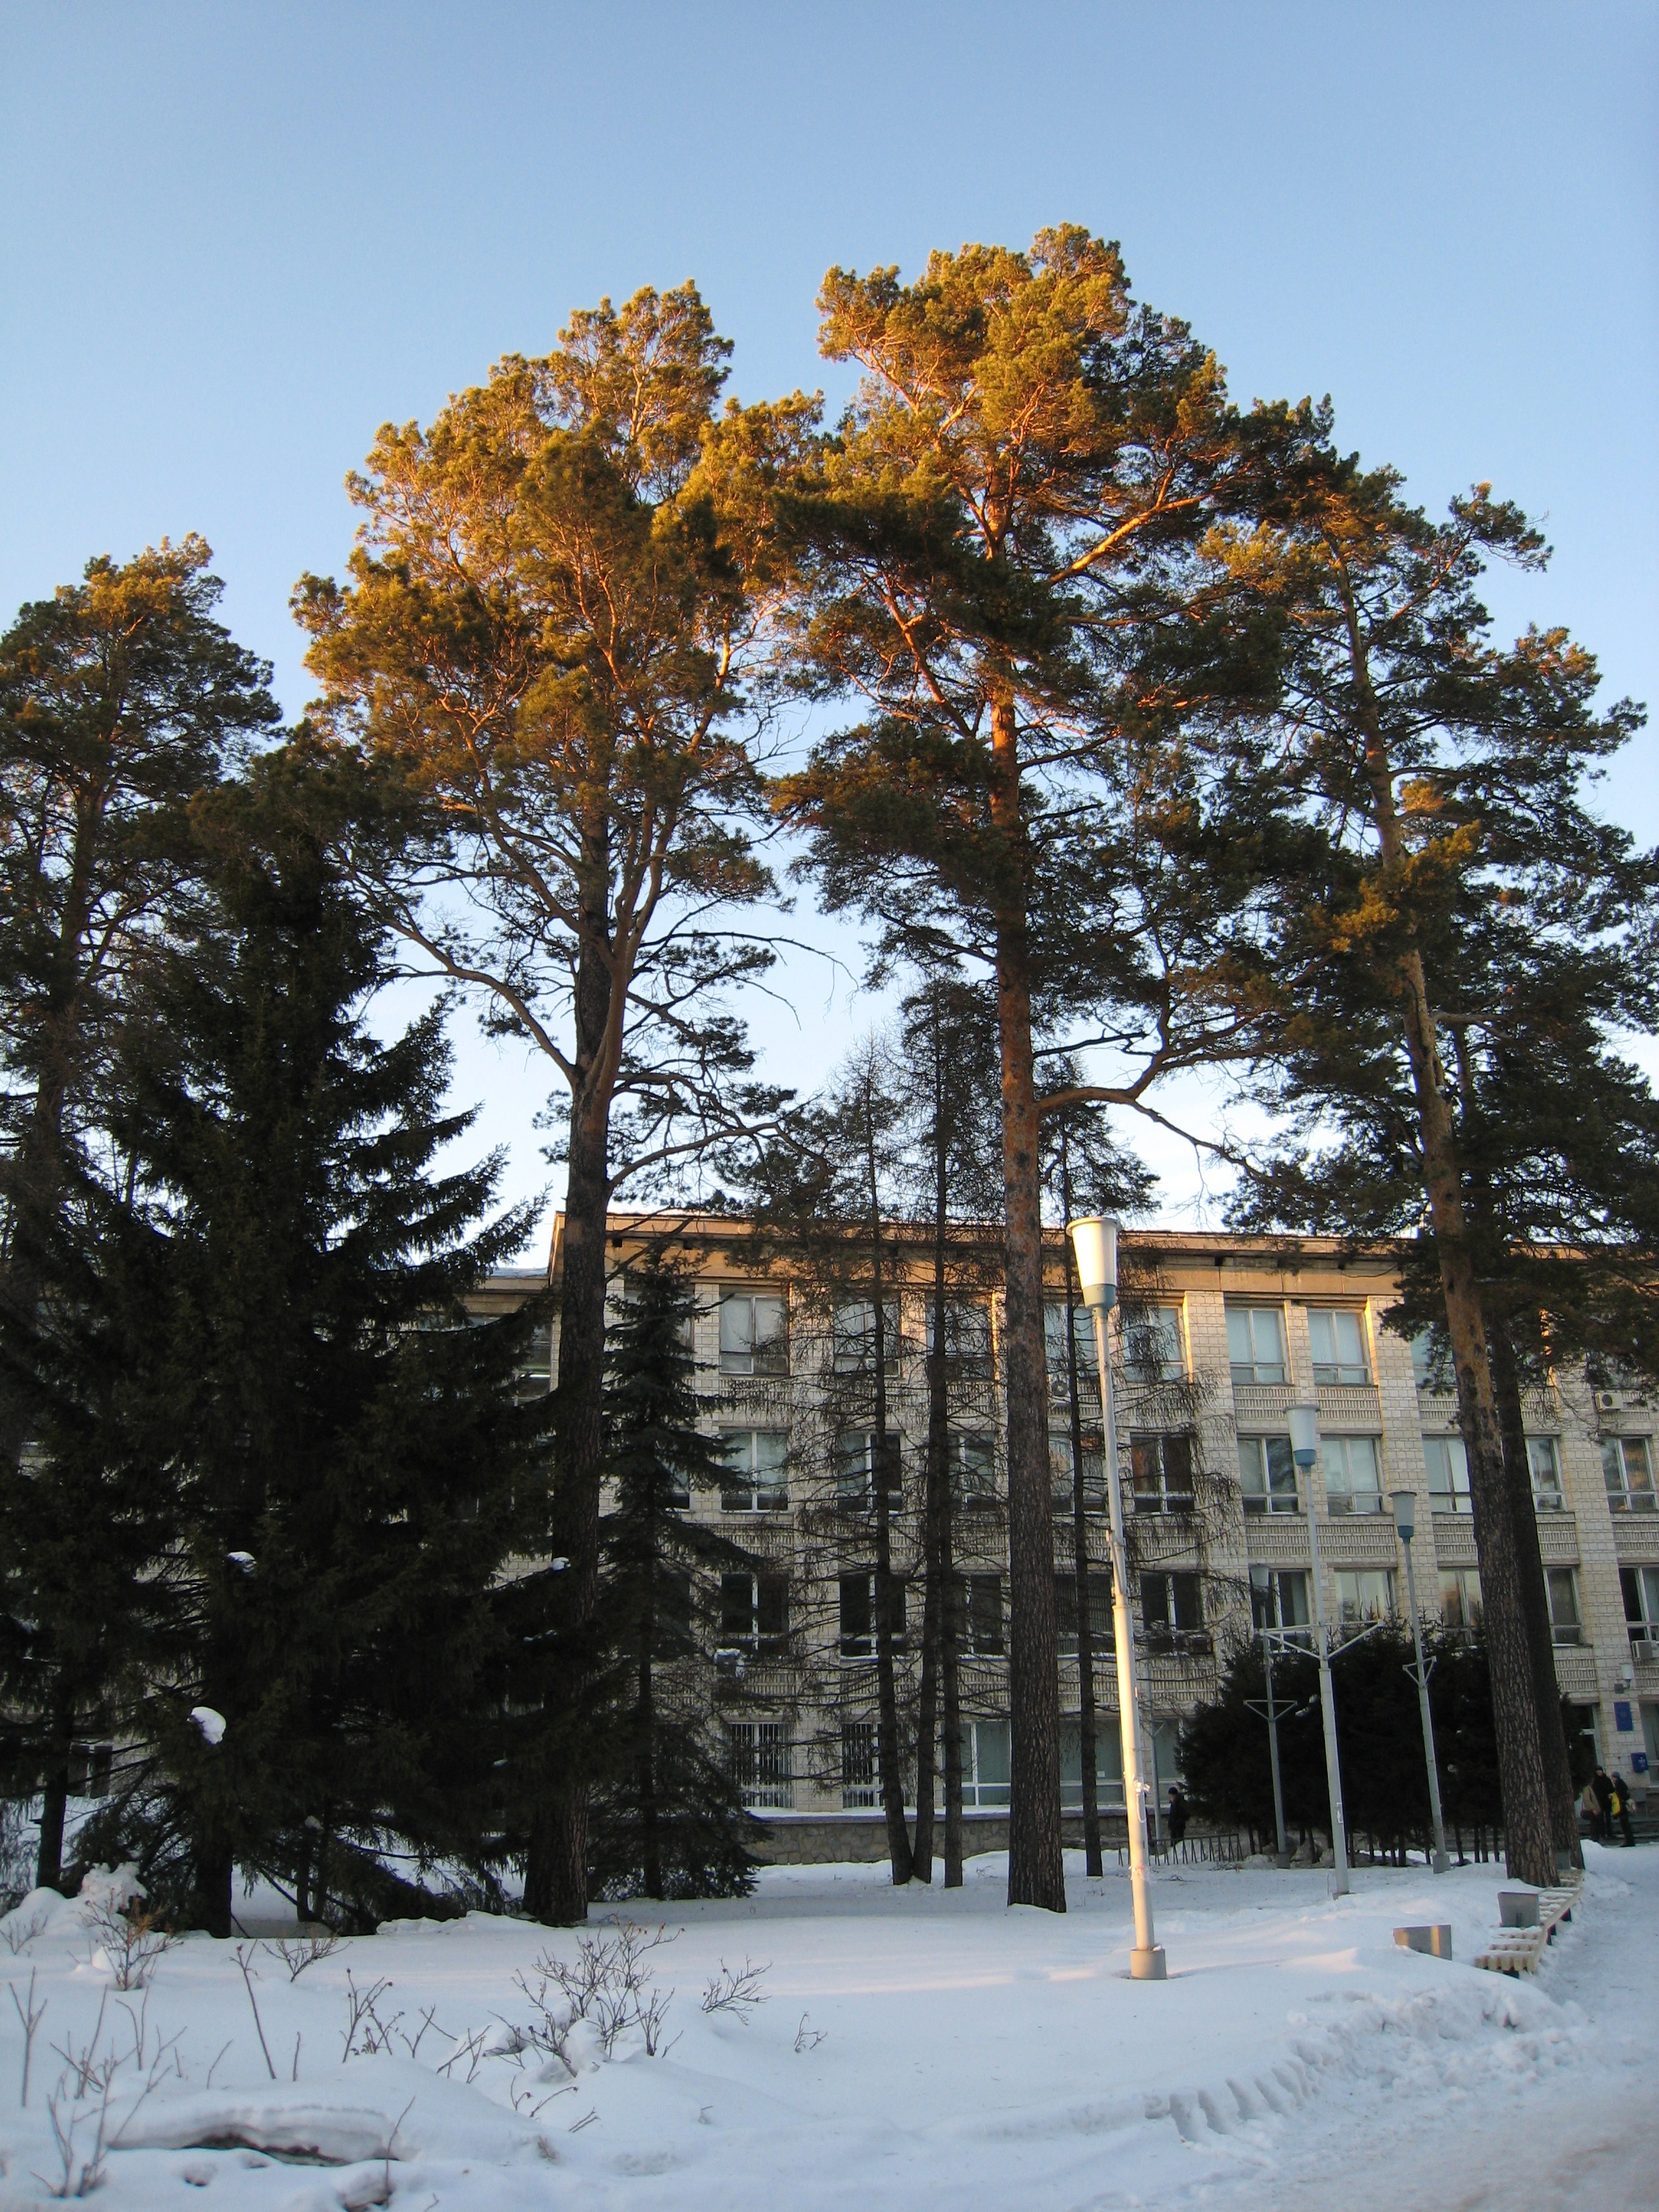 Fir-trees near the University